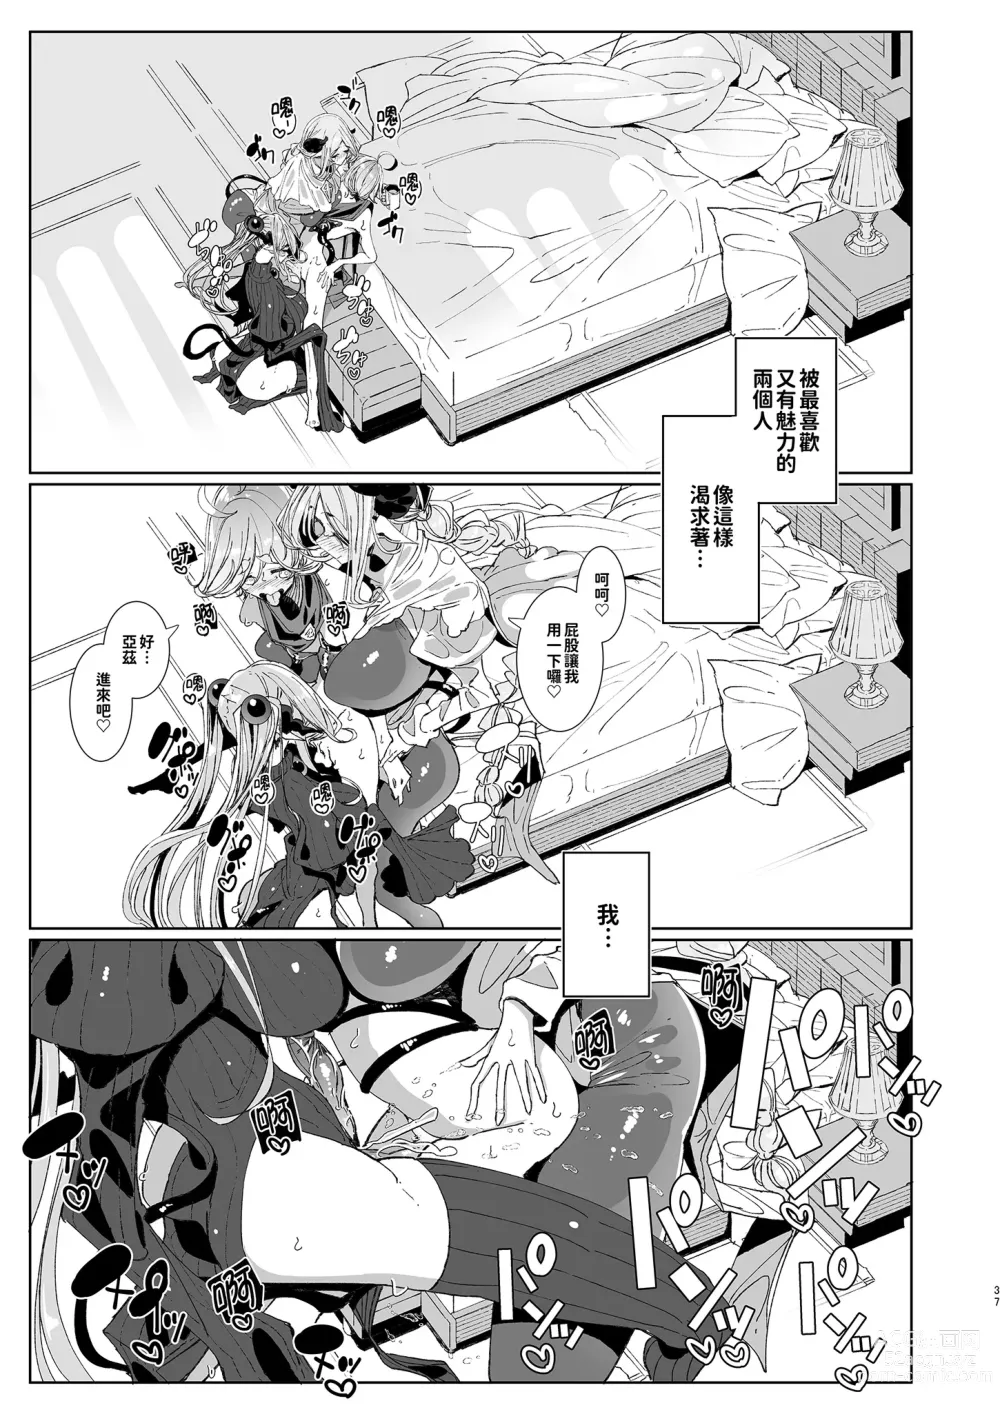 Page 37 of doujinshi 勇者和兩位扶她淫魔在討伐魔王後肯定要做那件事吧! (decensored)